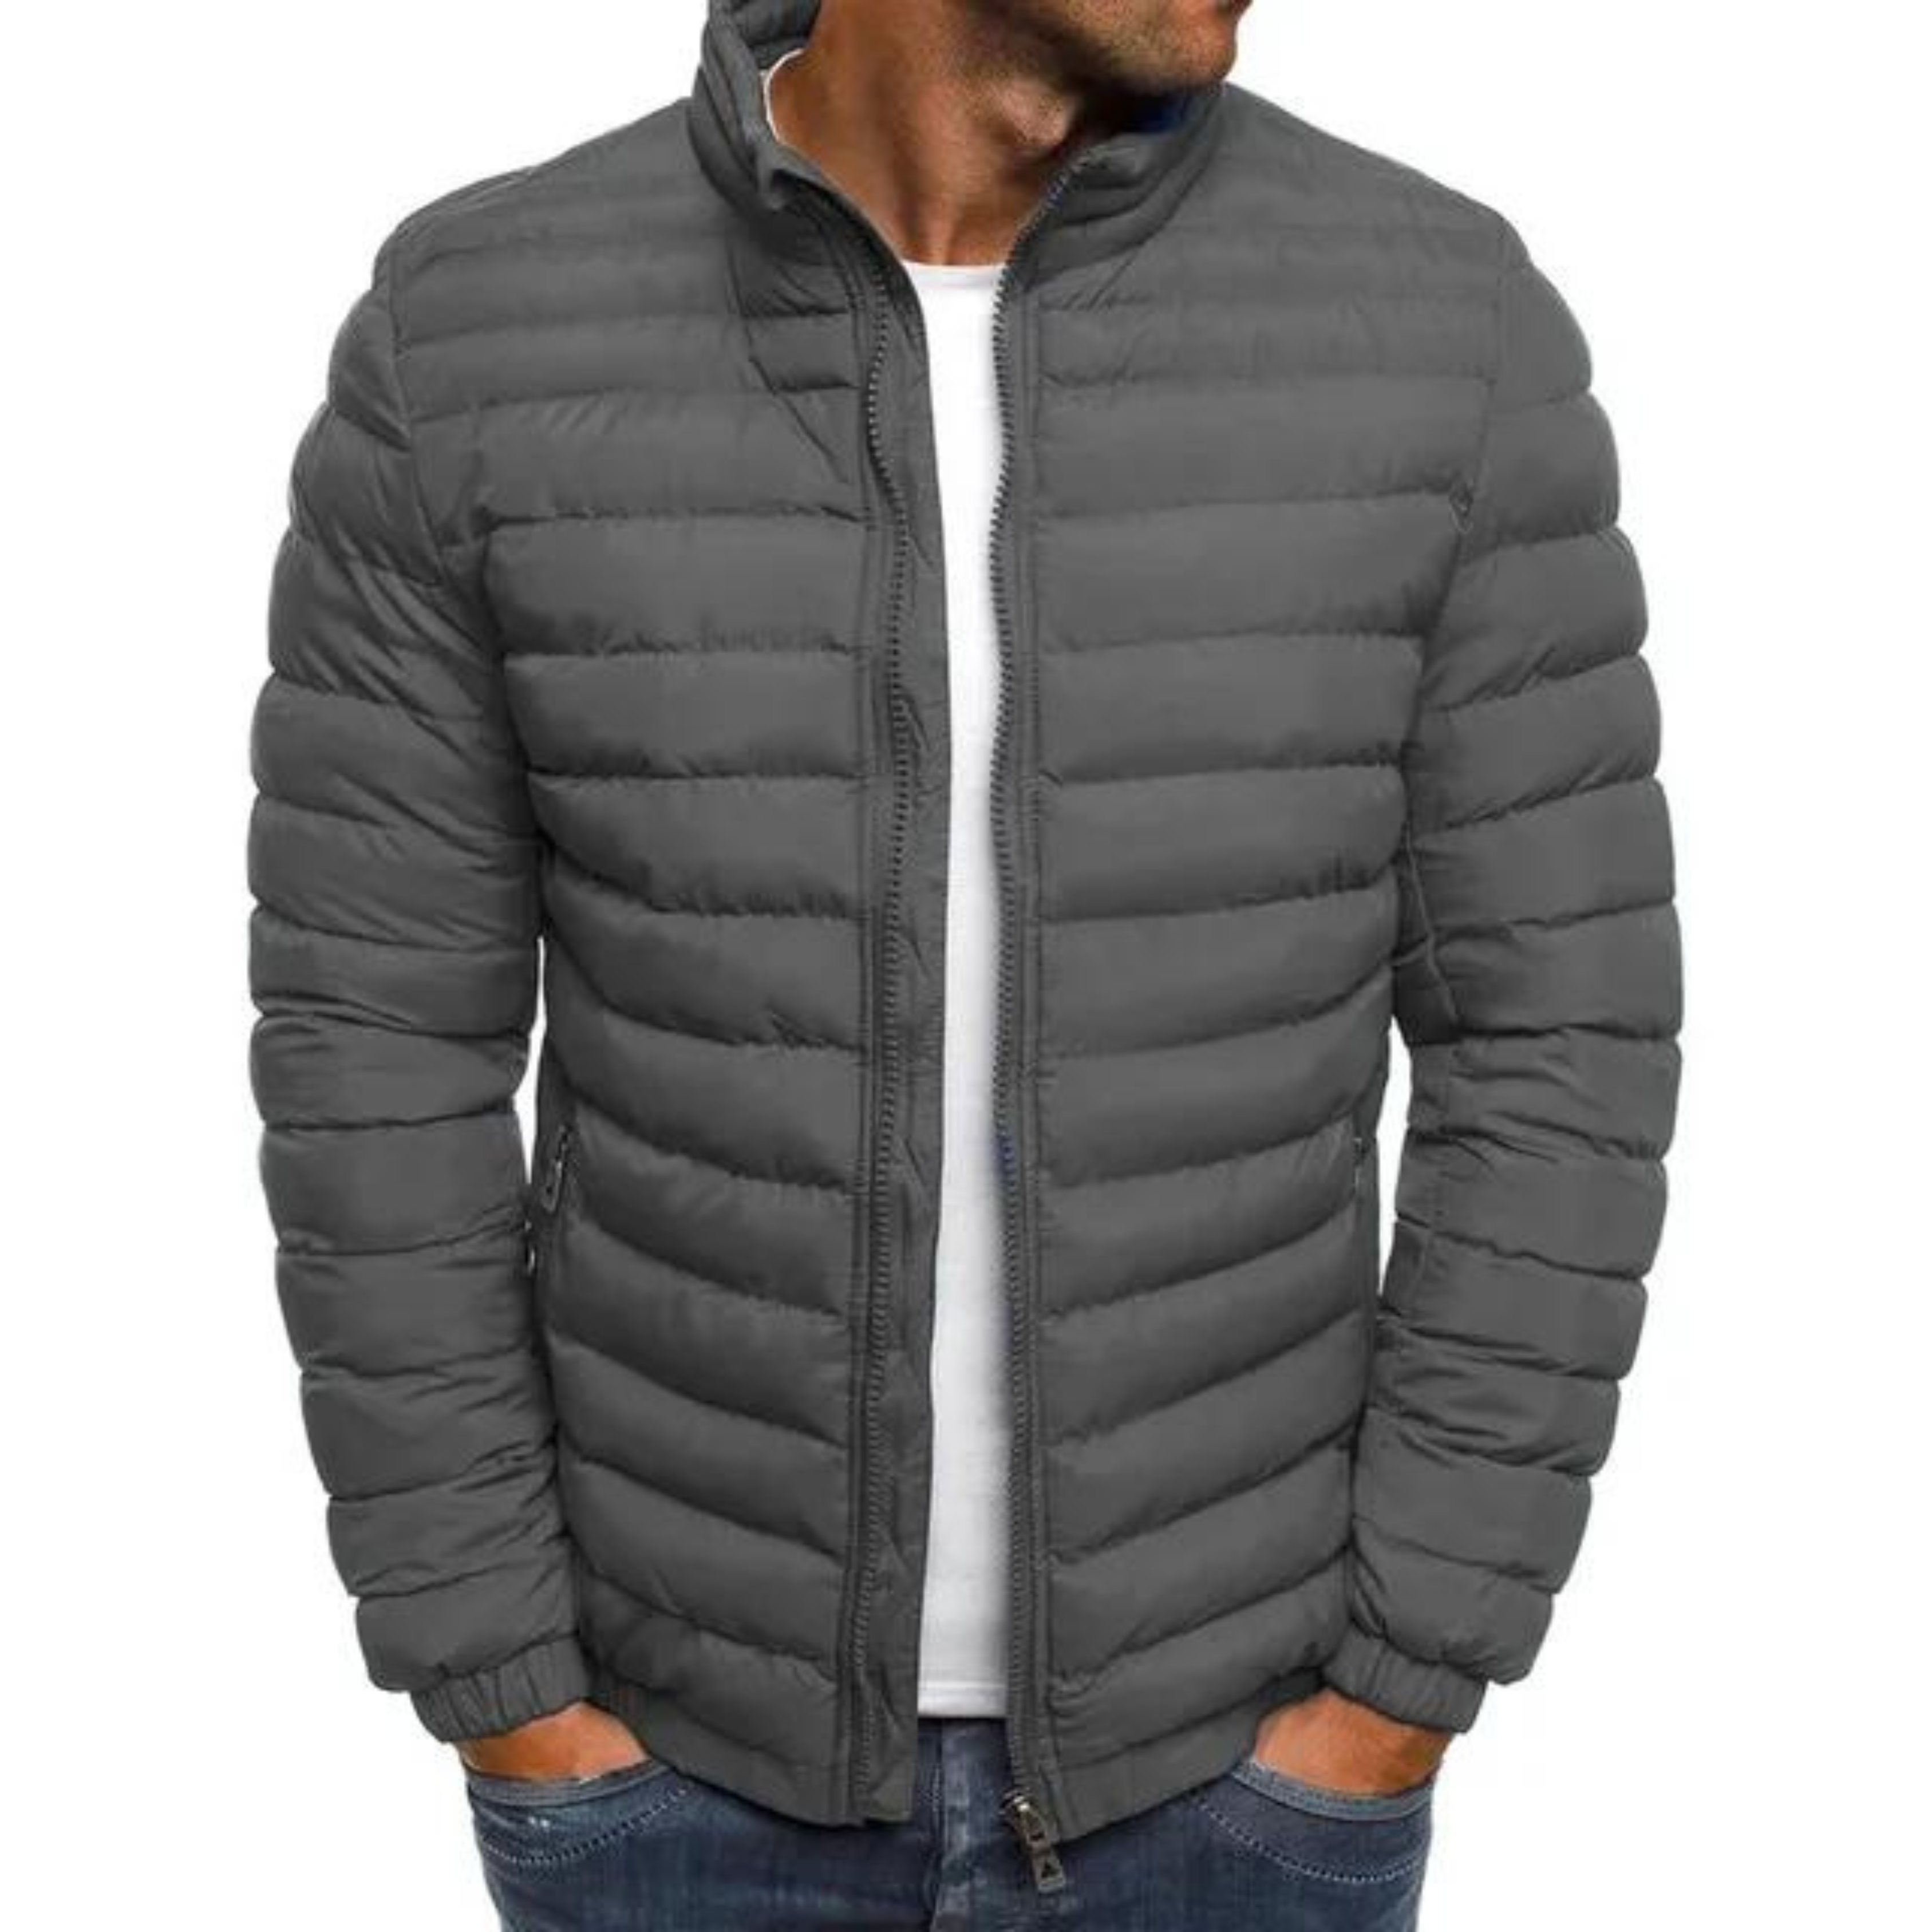 FLYNN™ - Stylish Warm Jacket